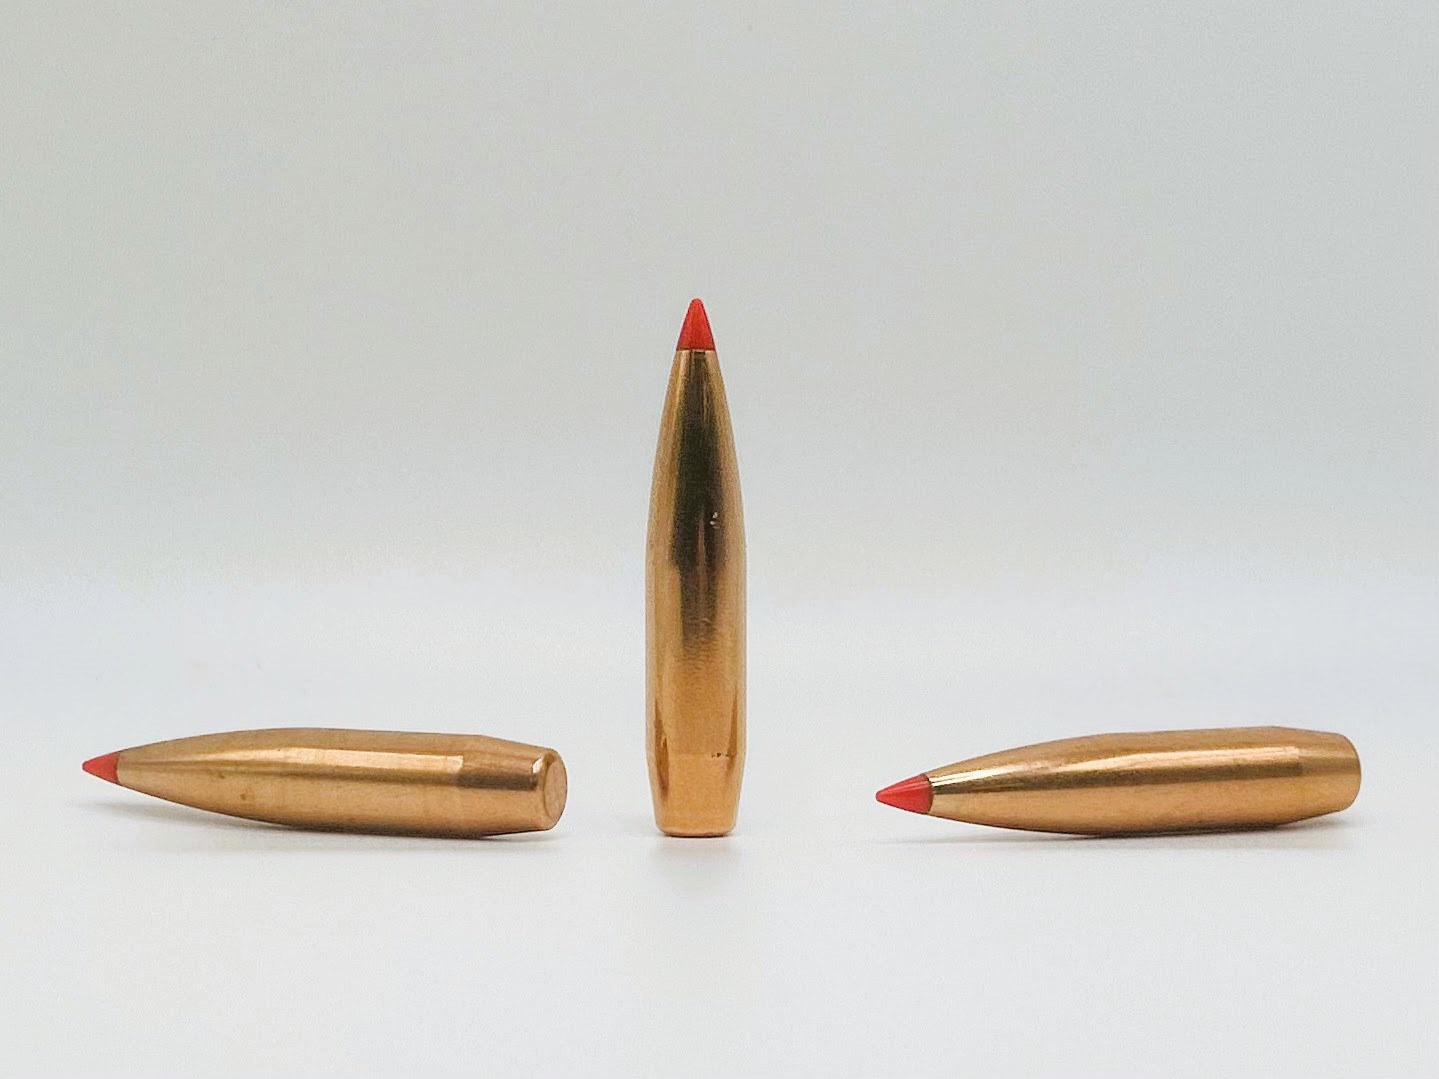 Hornady 338-Cal-285gr-AMAX bullet